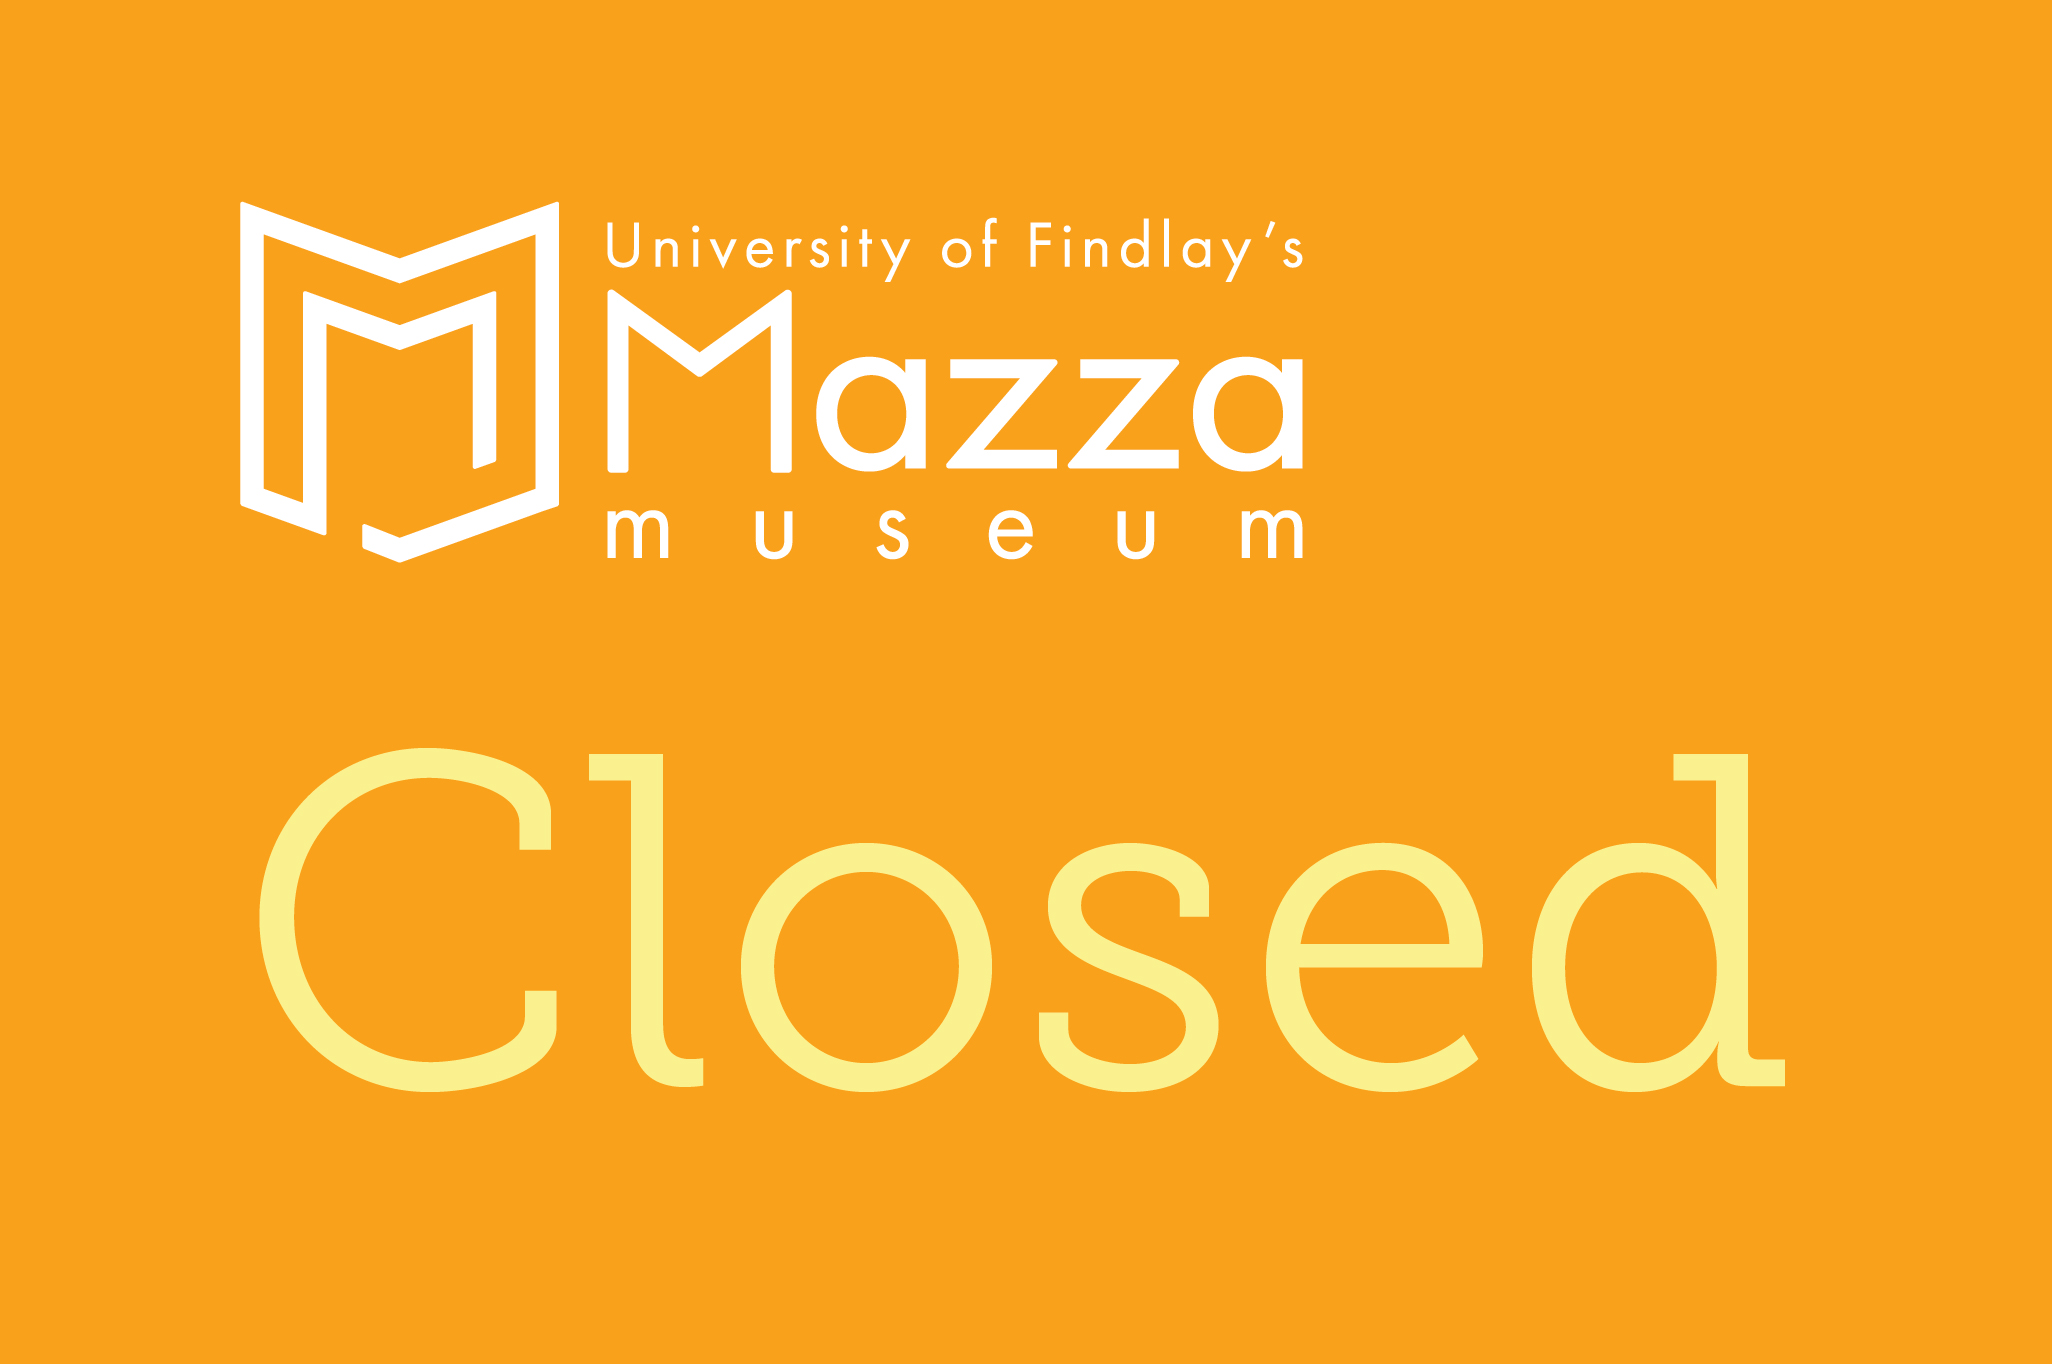 Mazza Museum Closed